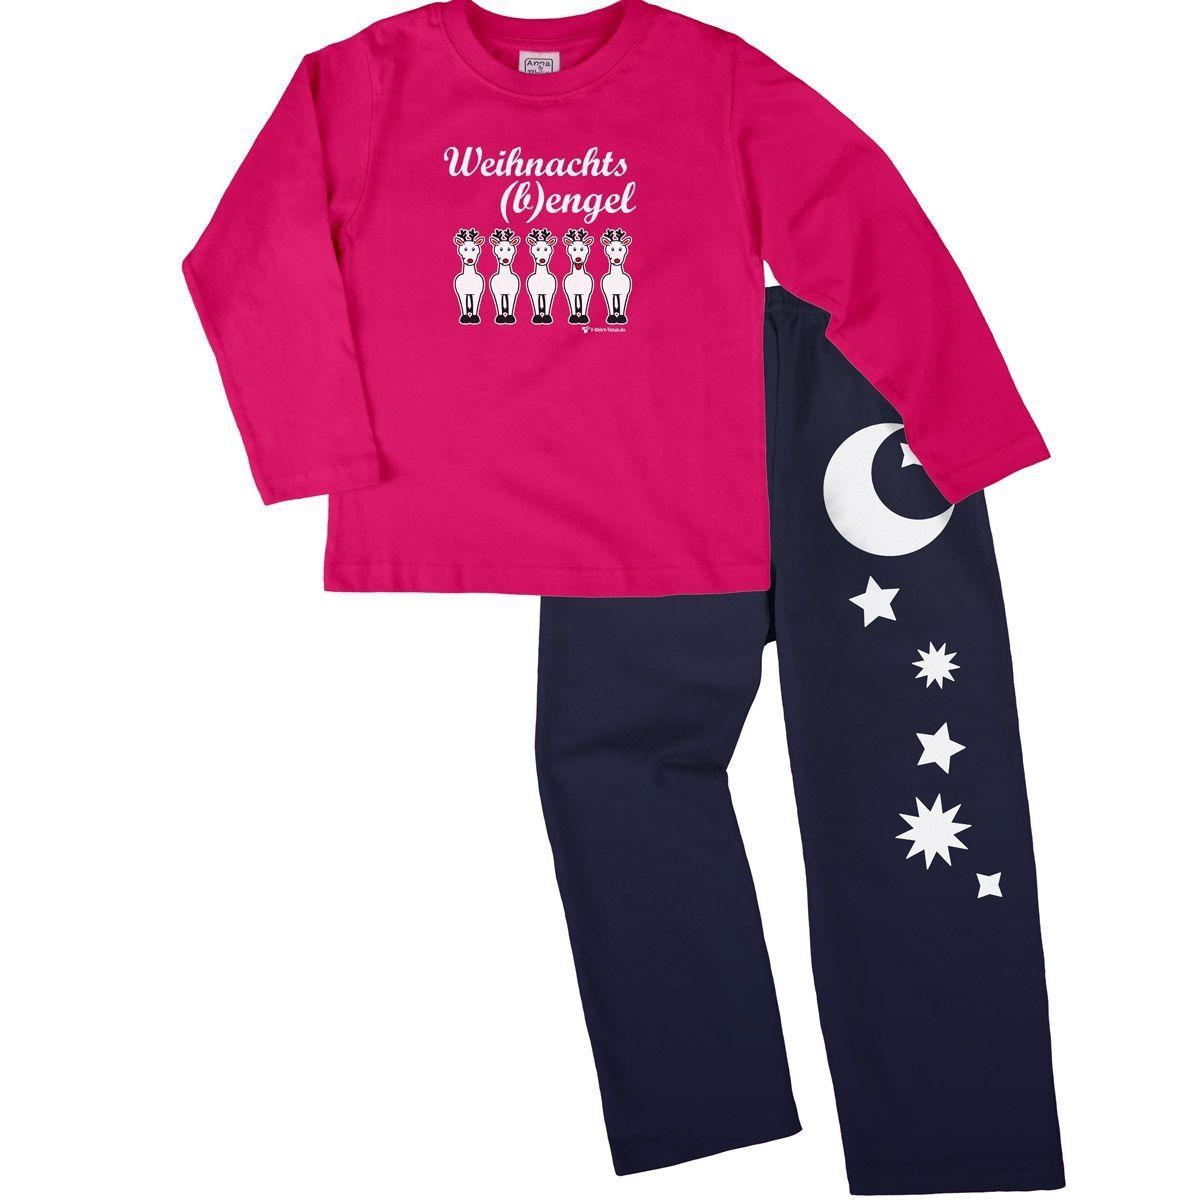 Weihnachtsbengel Pyjama Set pink / navy 92